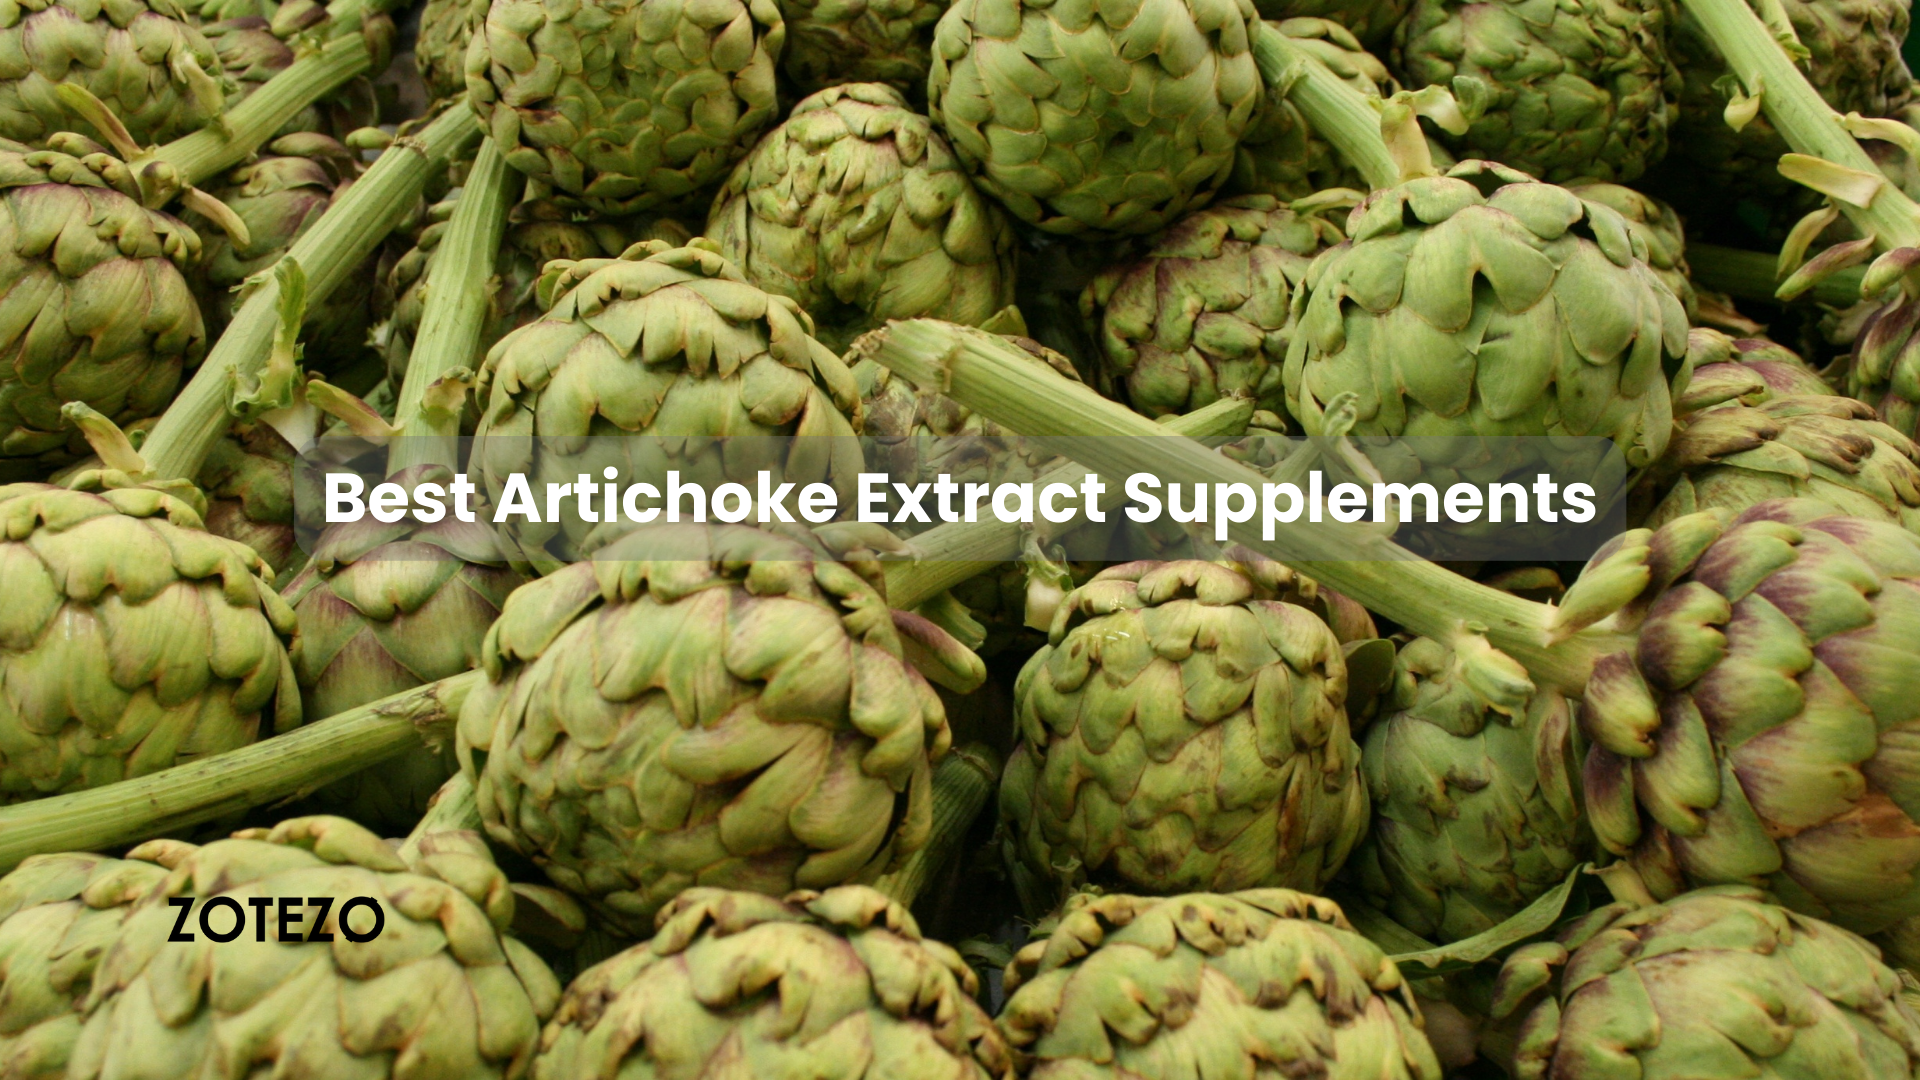 Artichoke Extract Supplements in Canada